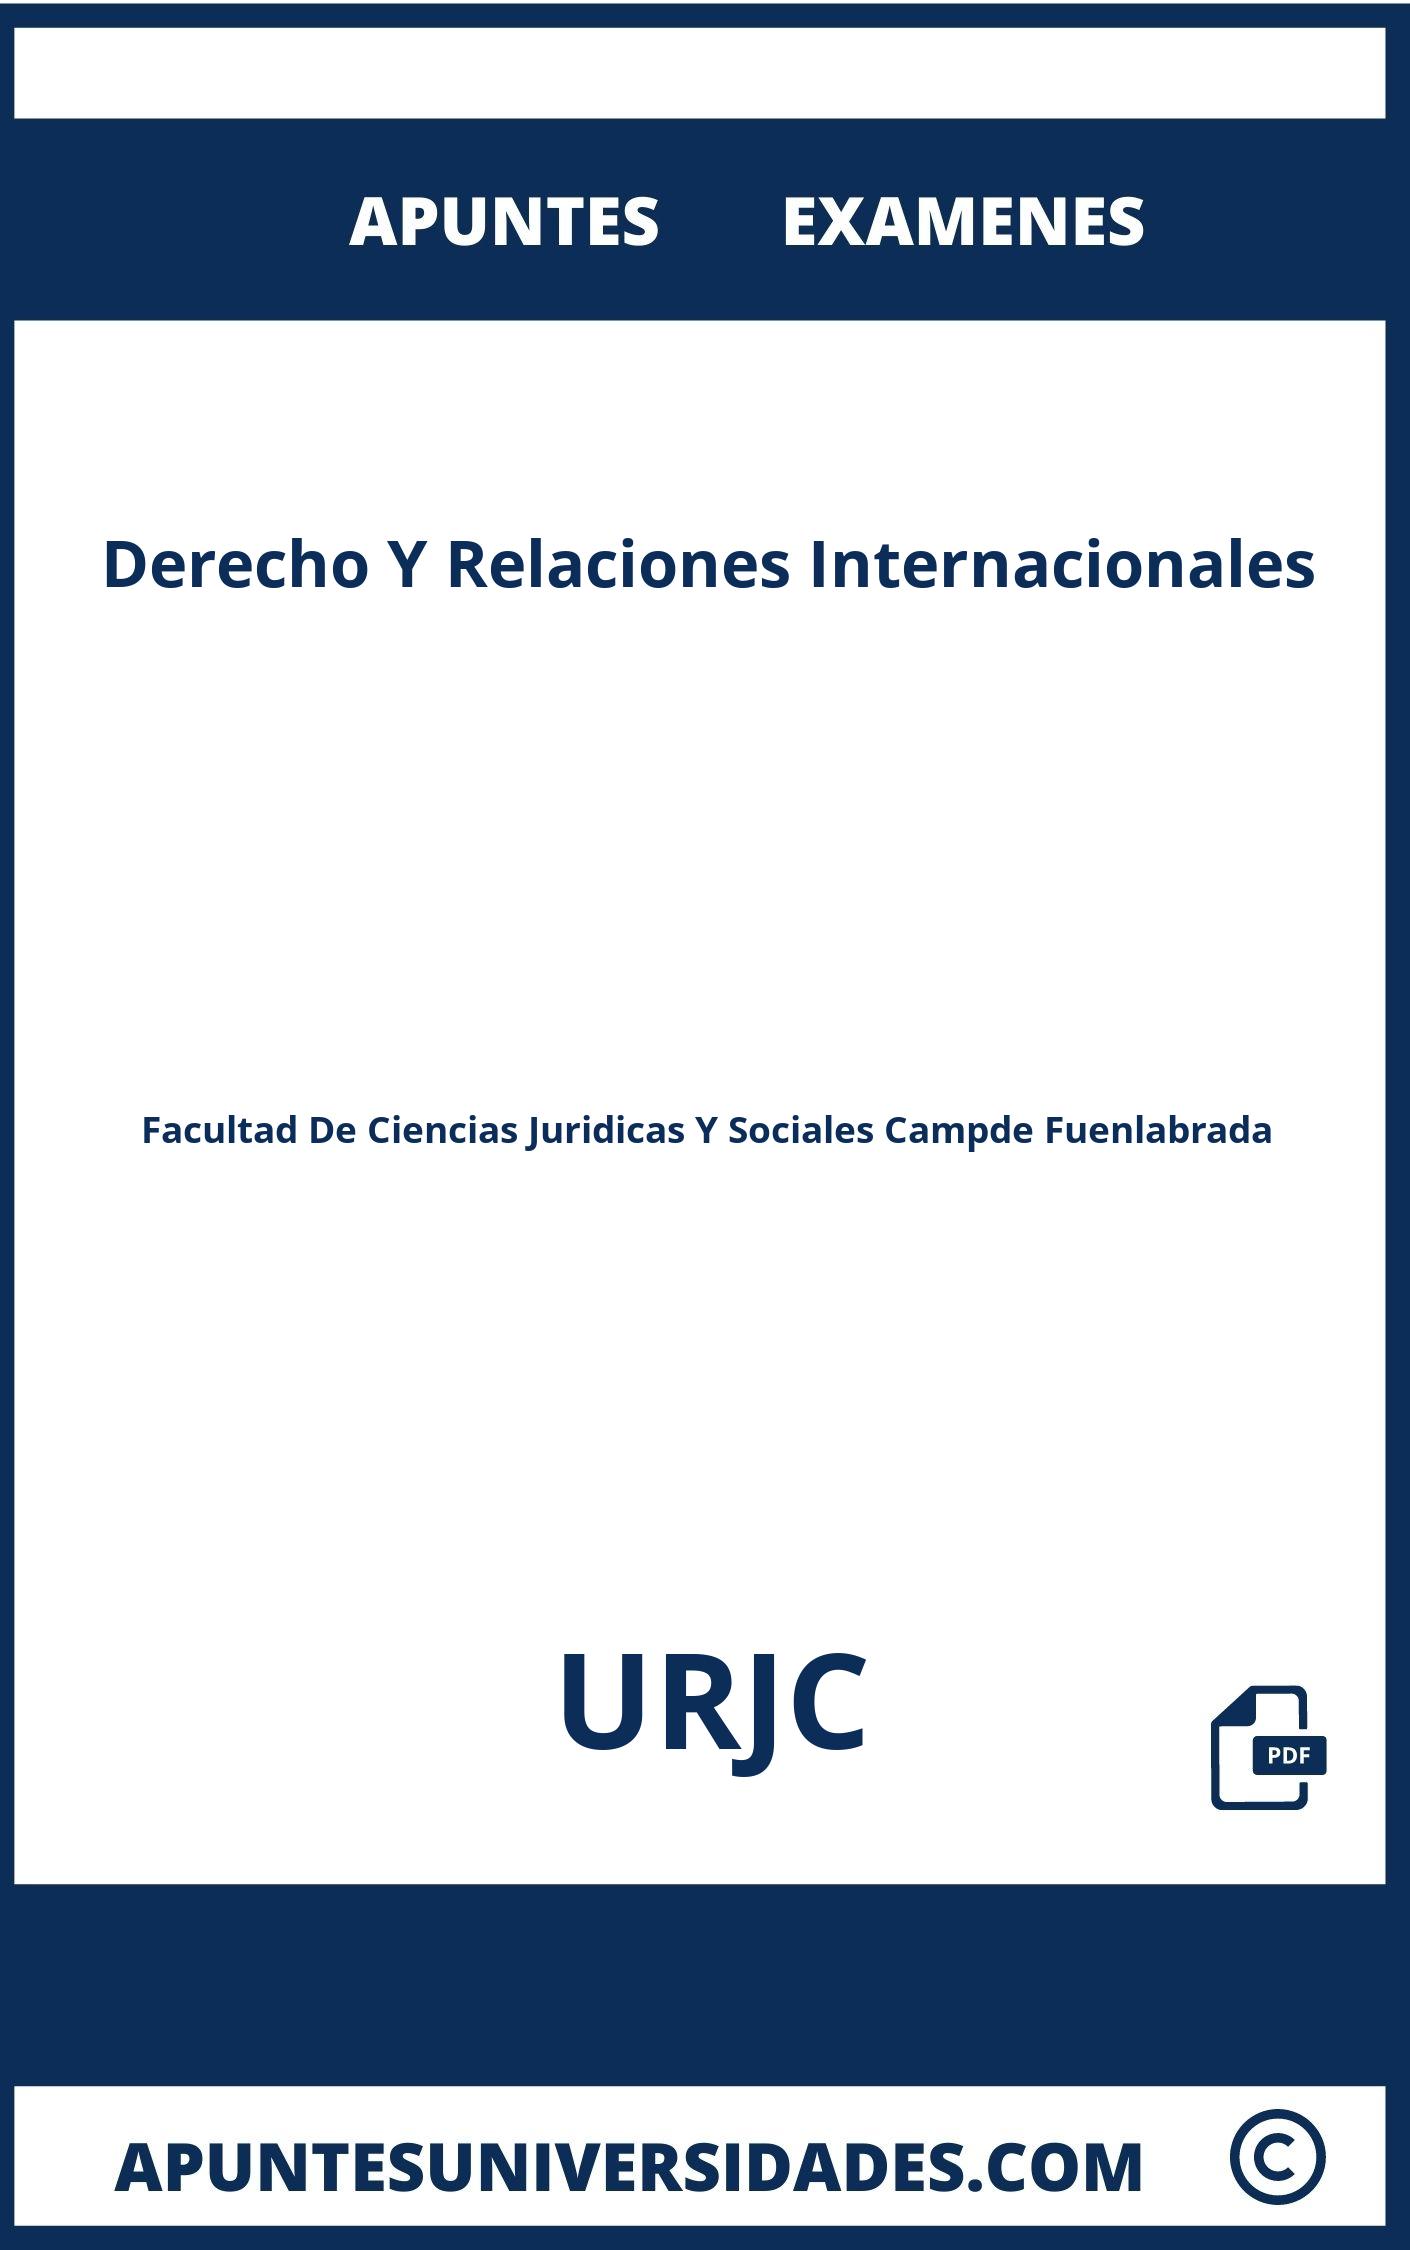 Apuntes Examenes Derecho Y Relaciones Internacionales URJC